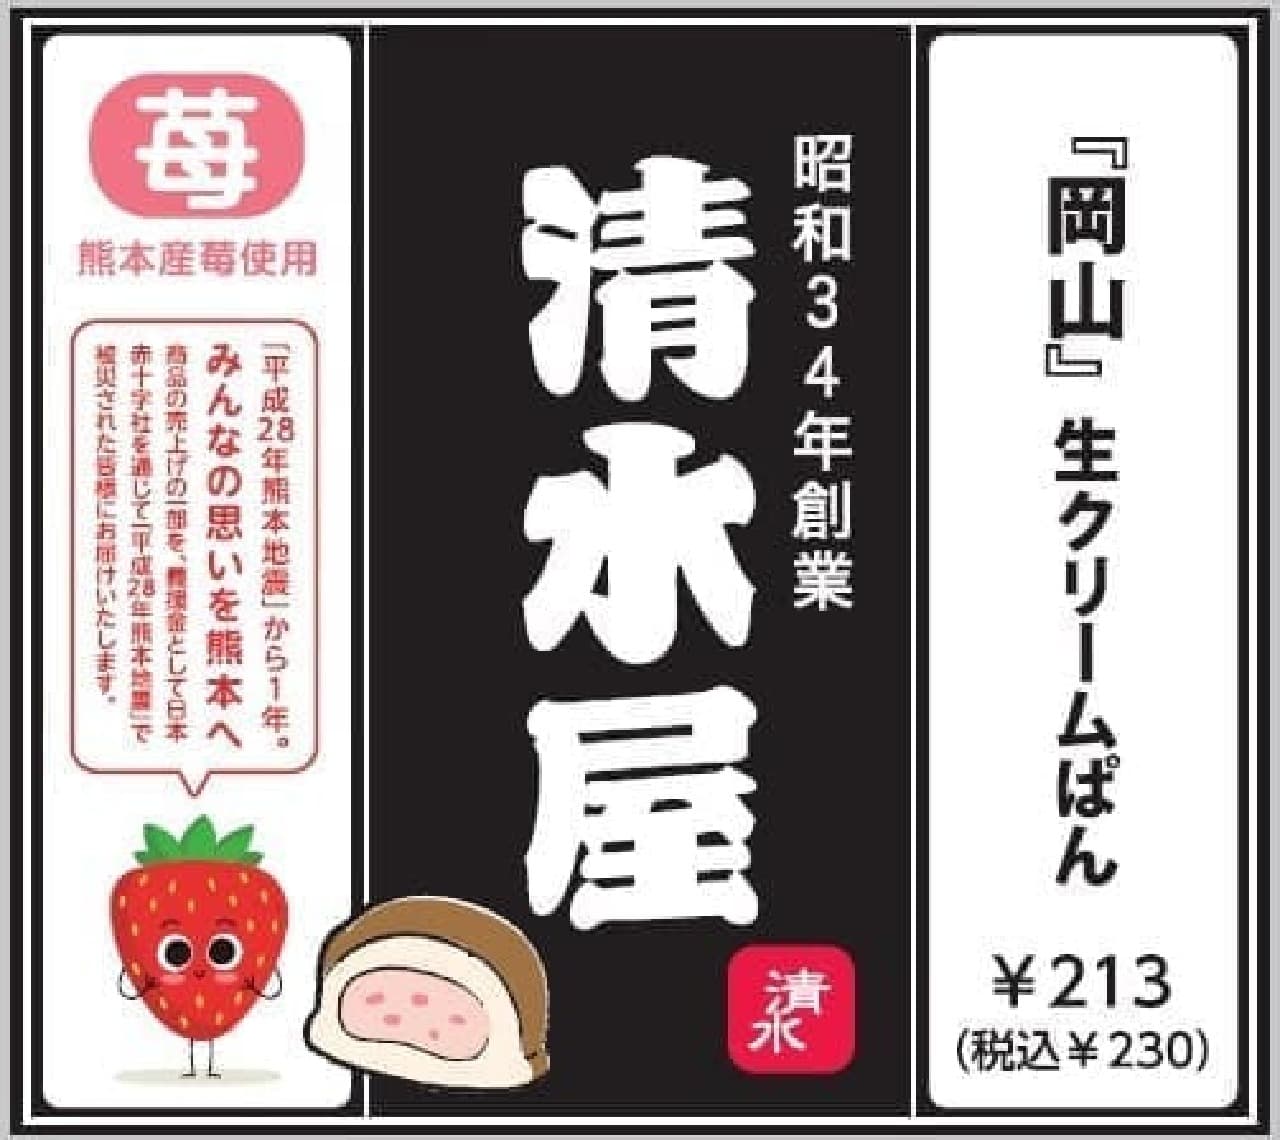 Three F "Shimizuya Strawberry Cream Pan (using strawberries from Kumamoto Prefecture)"